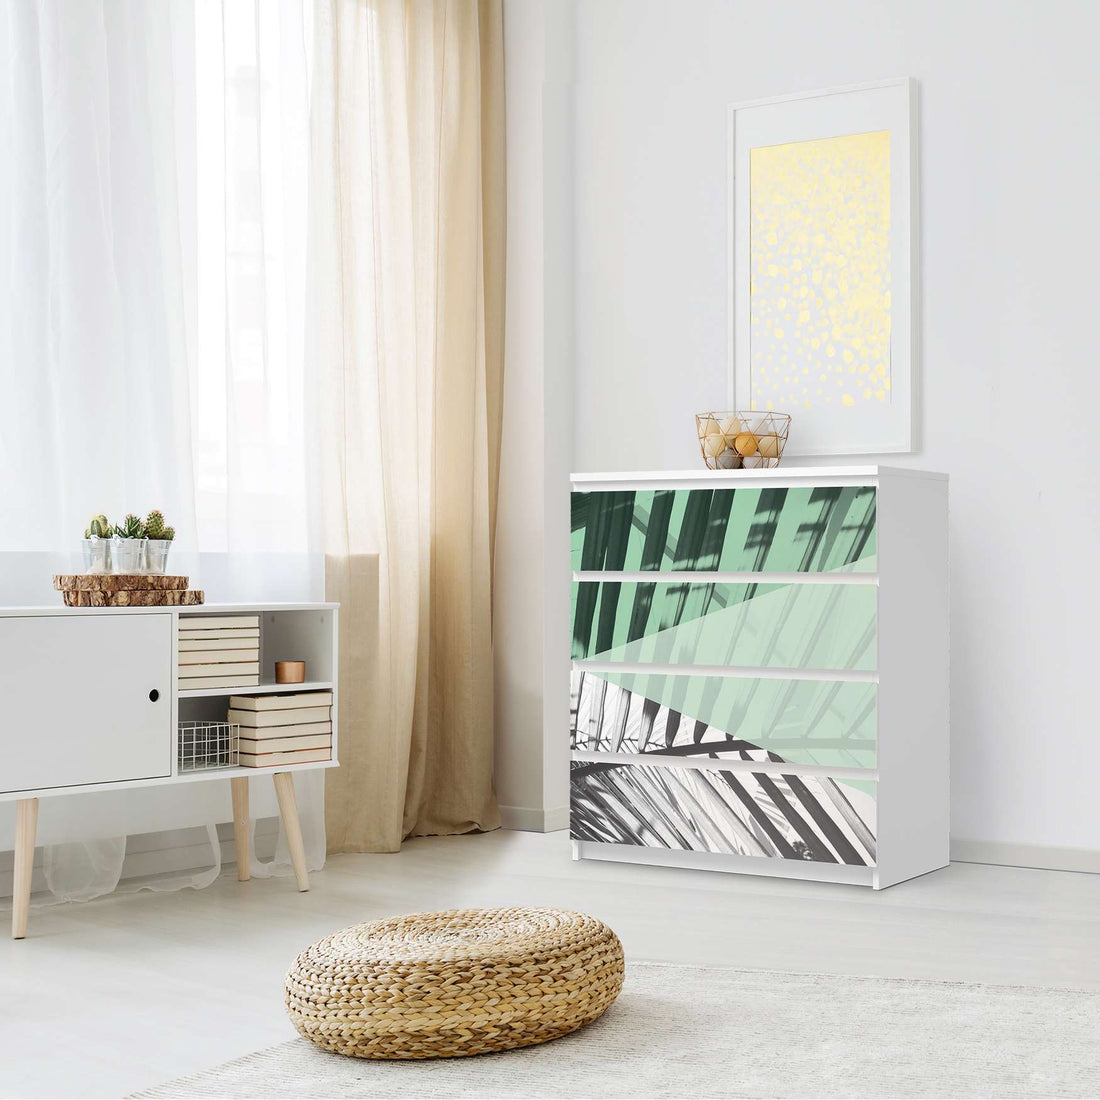 Folie für Möbel Palmen mint - IKEA Malm Kommode 4 Schubladen - Schlafzimmer